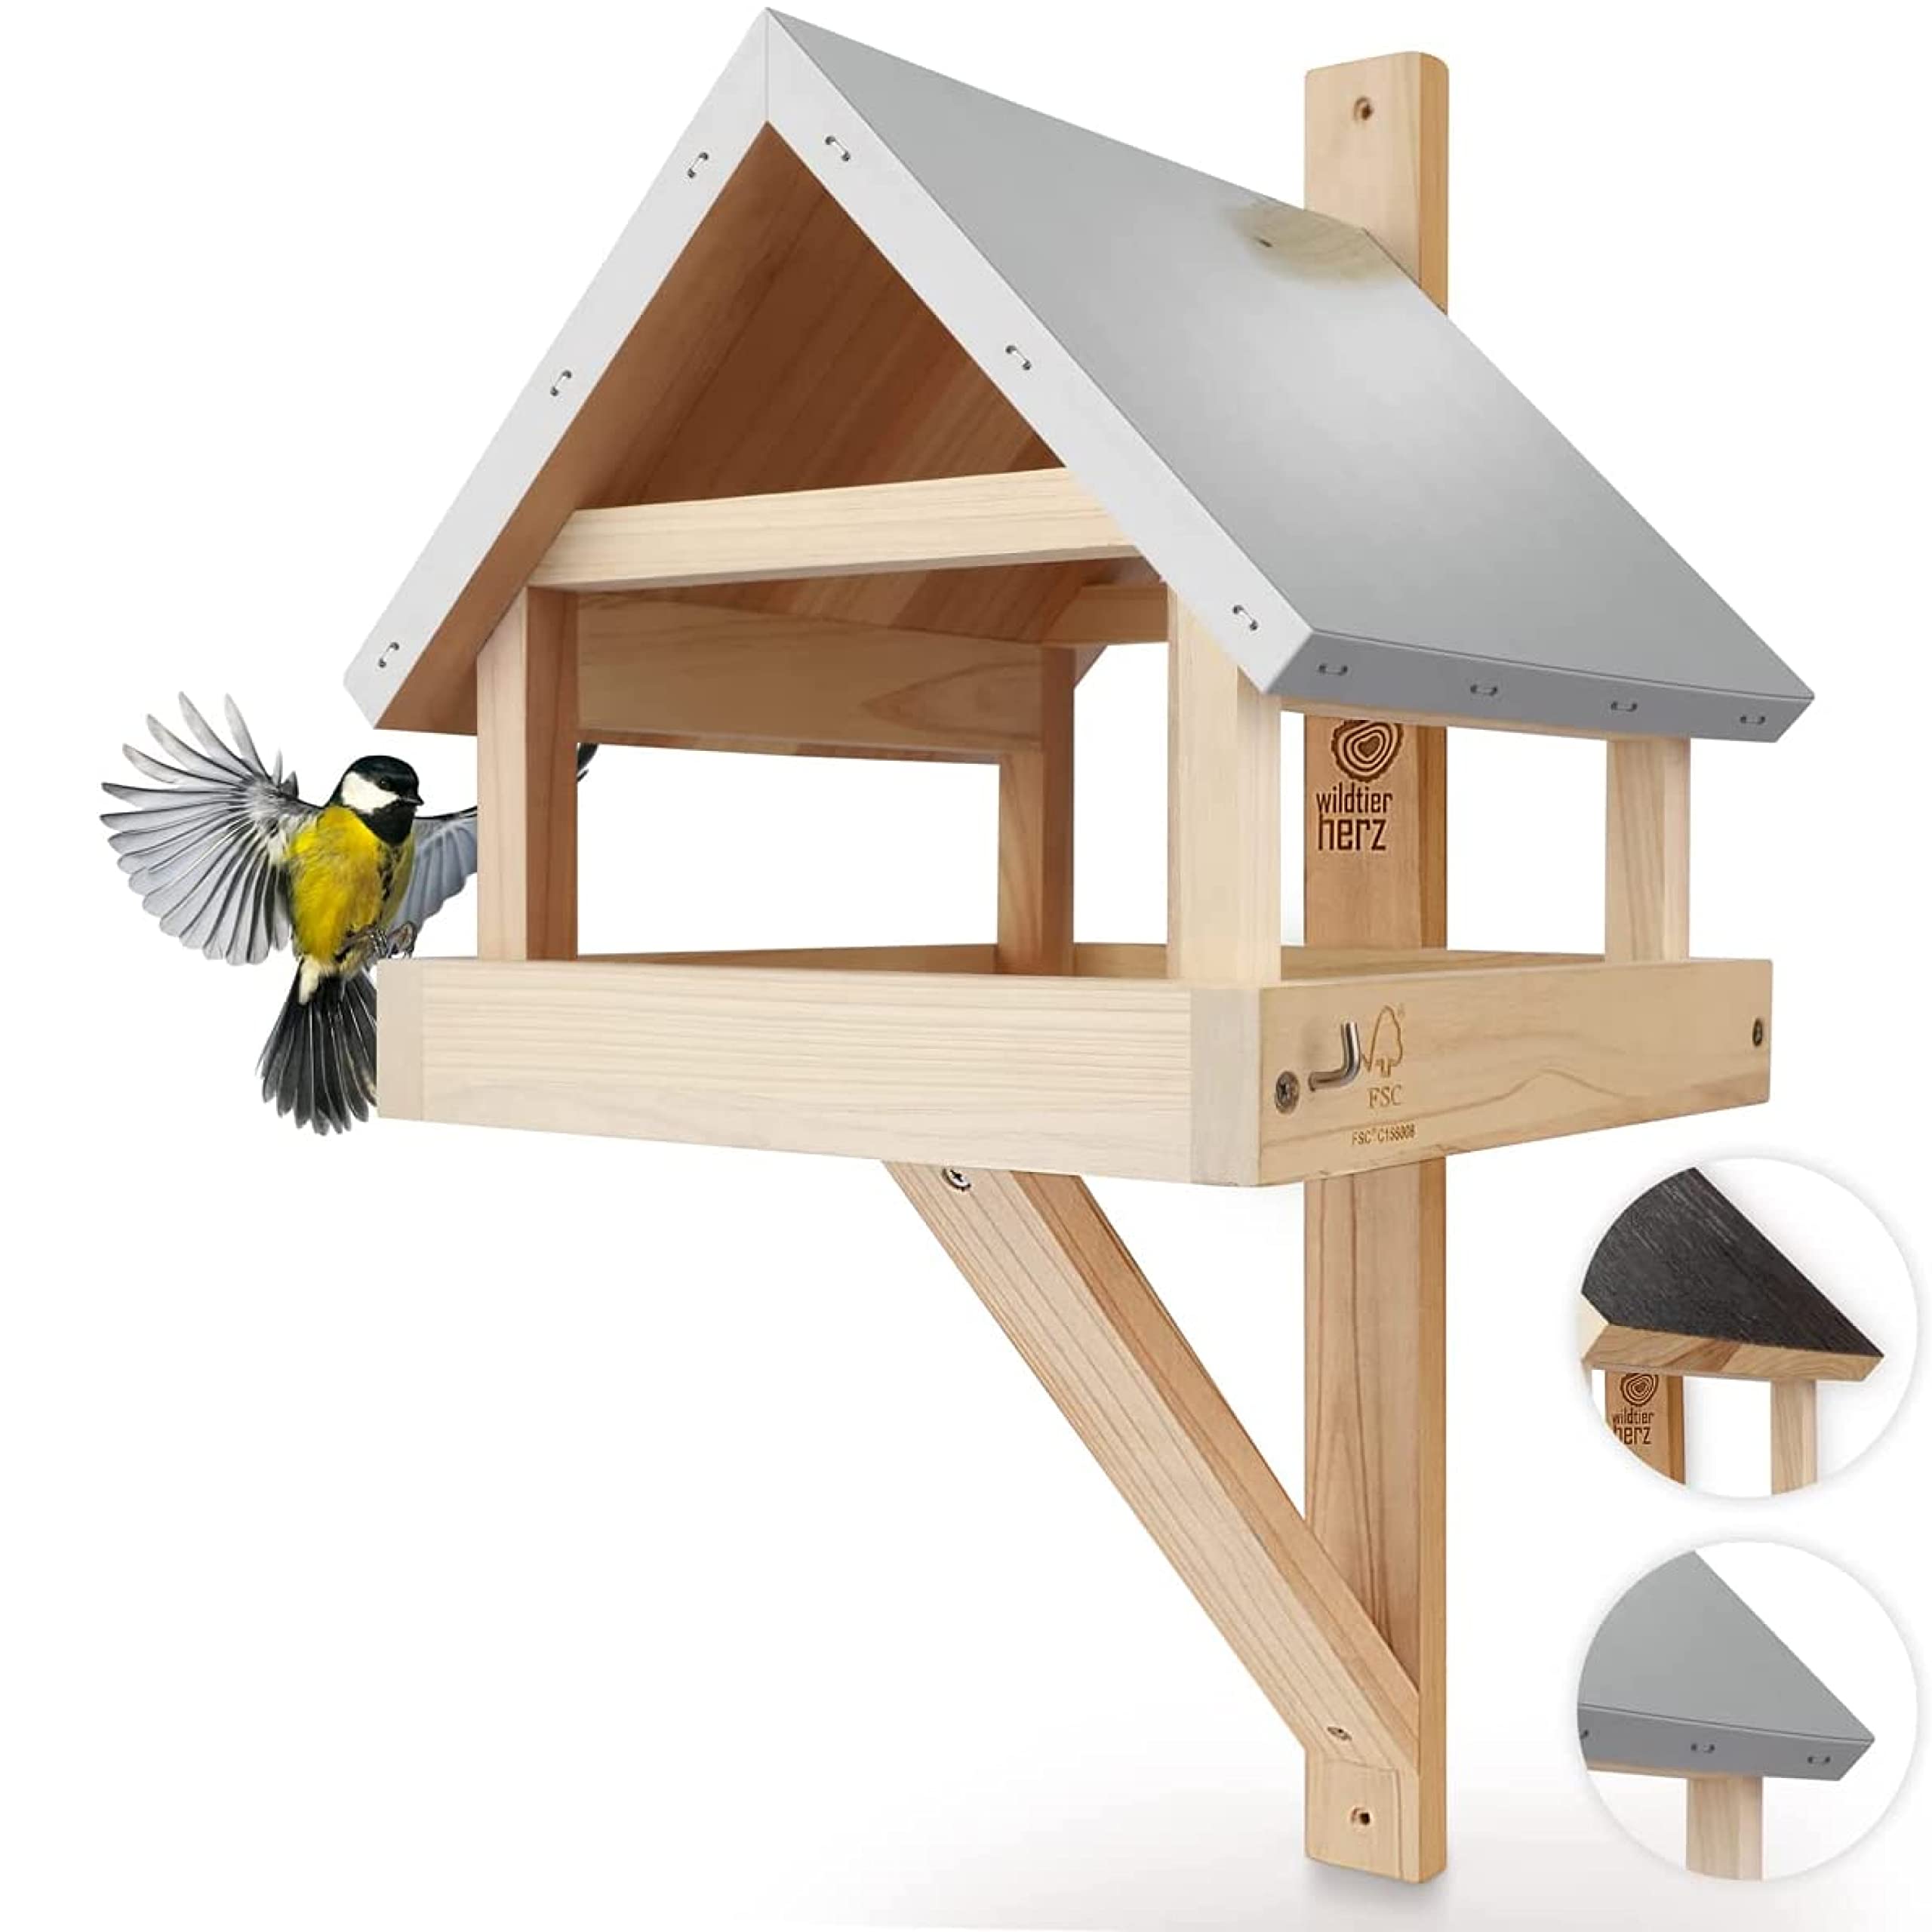 Mangeoire pour oiseaux à suspendre en bois et zinc